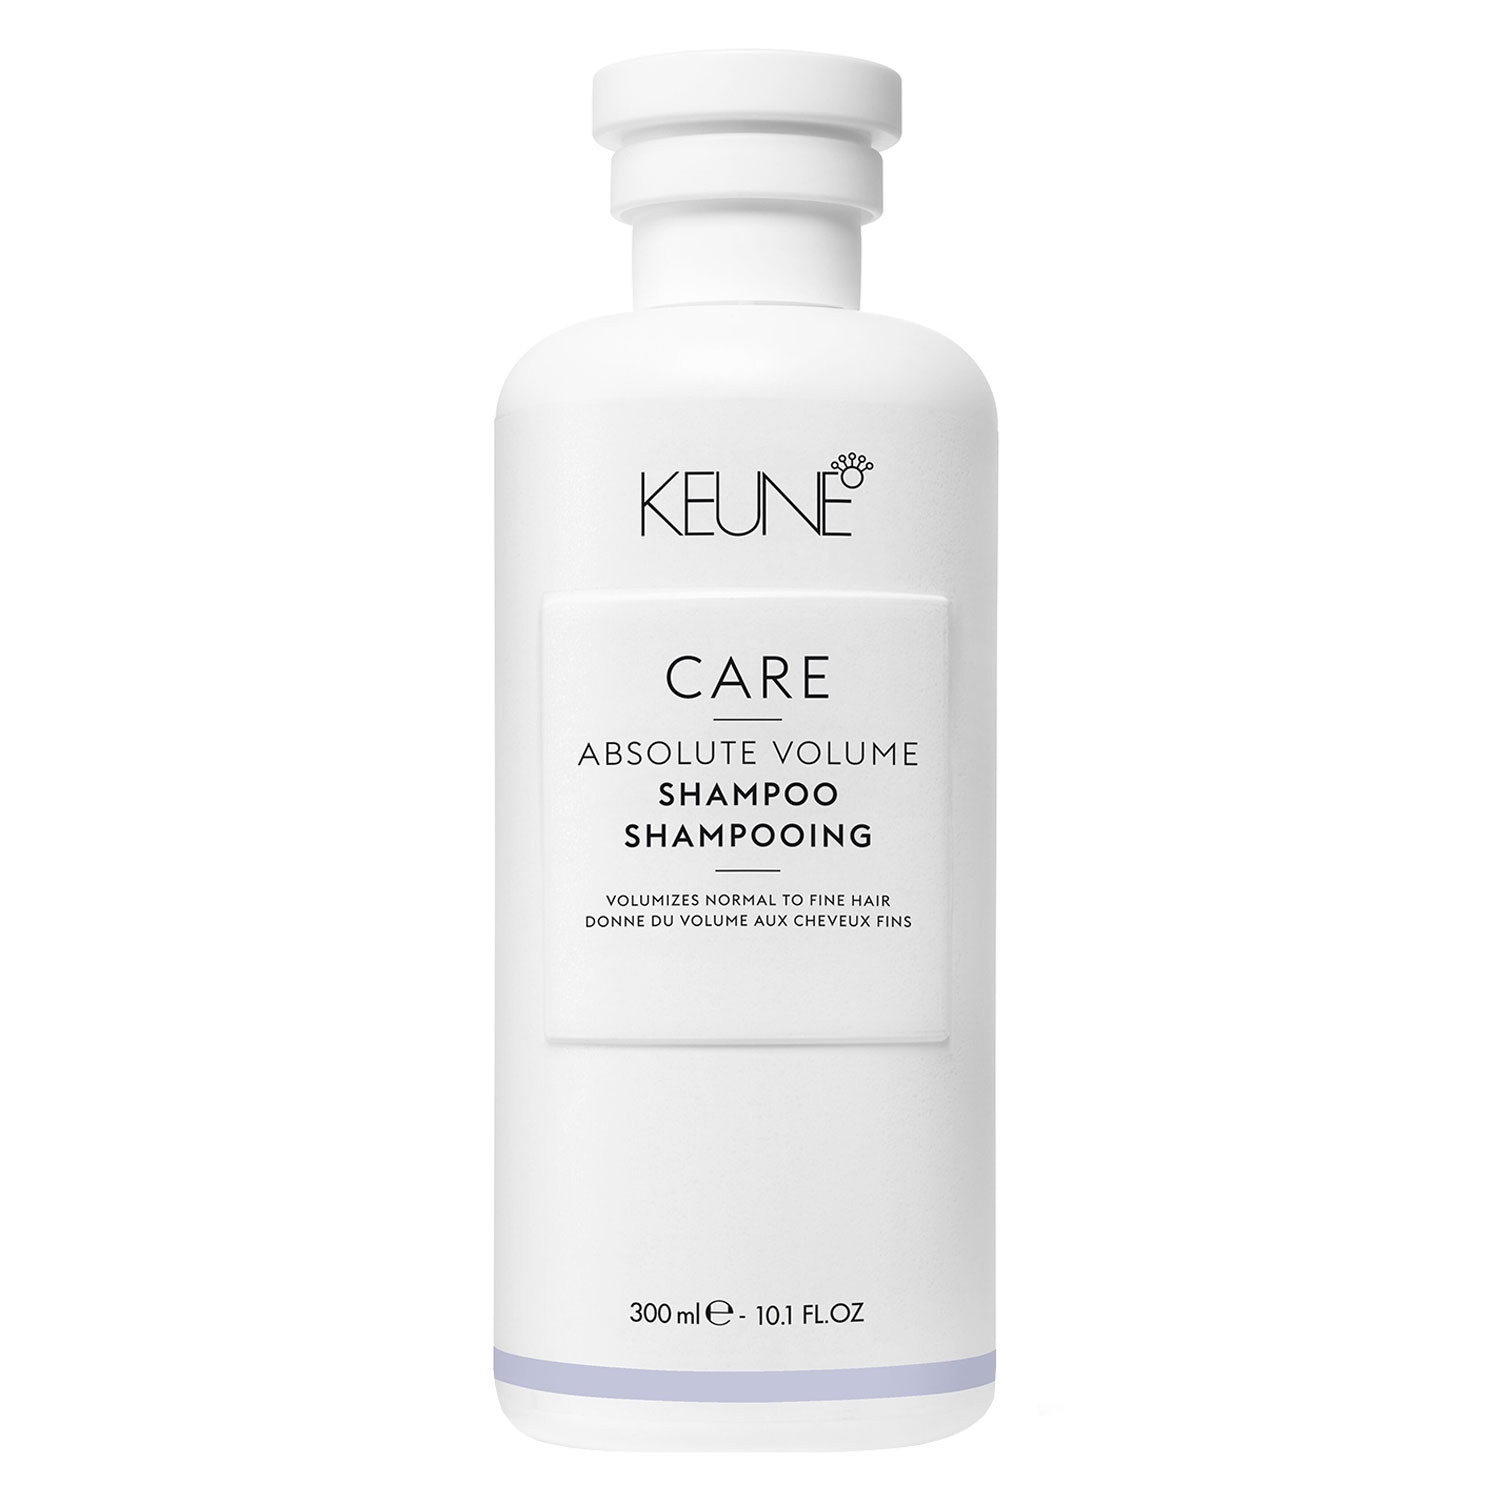 Produktbild von Keune Care - Absolute Volume Shampoo